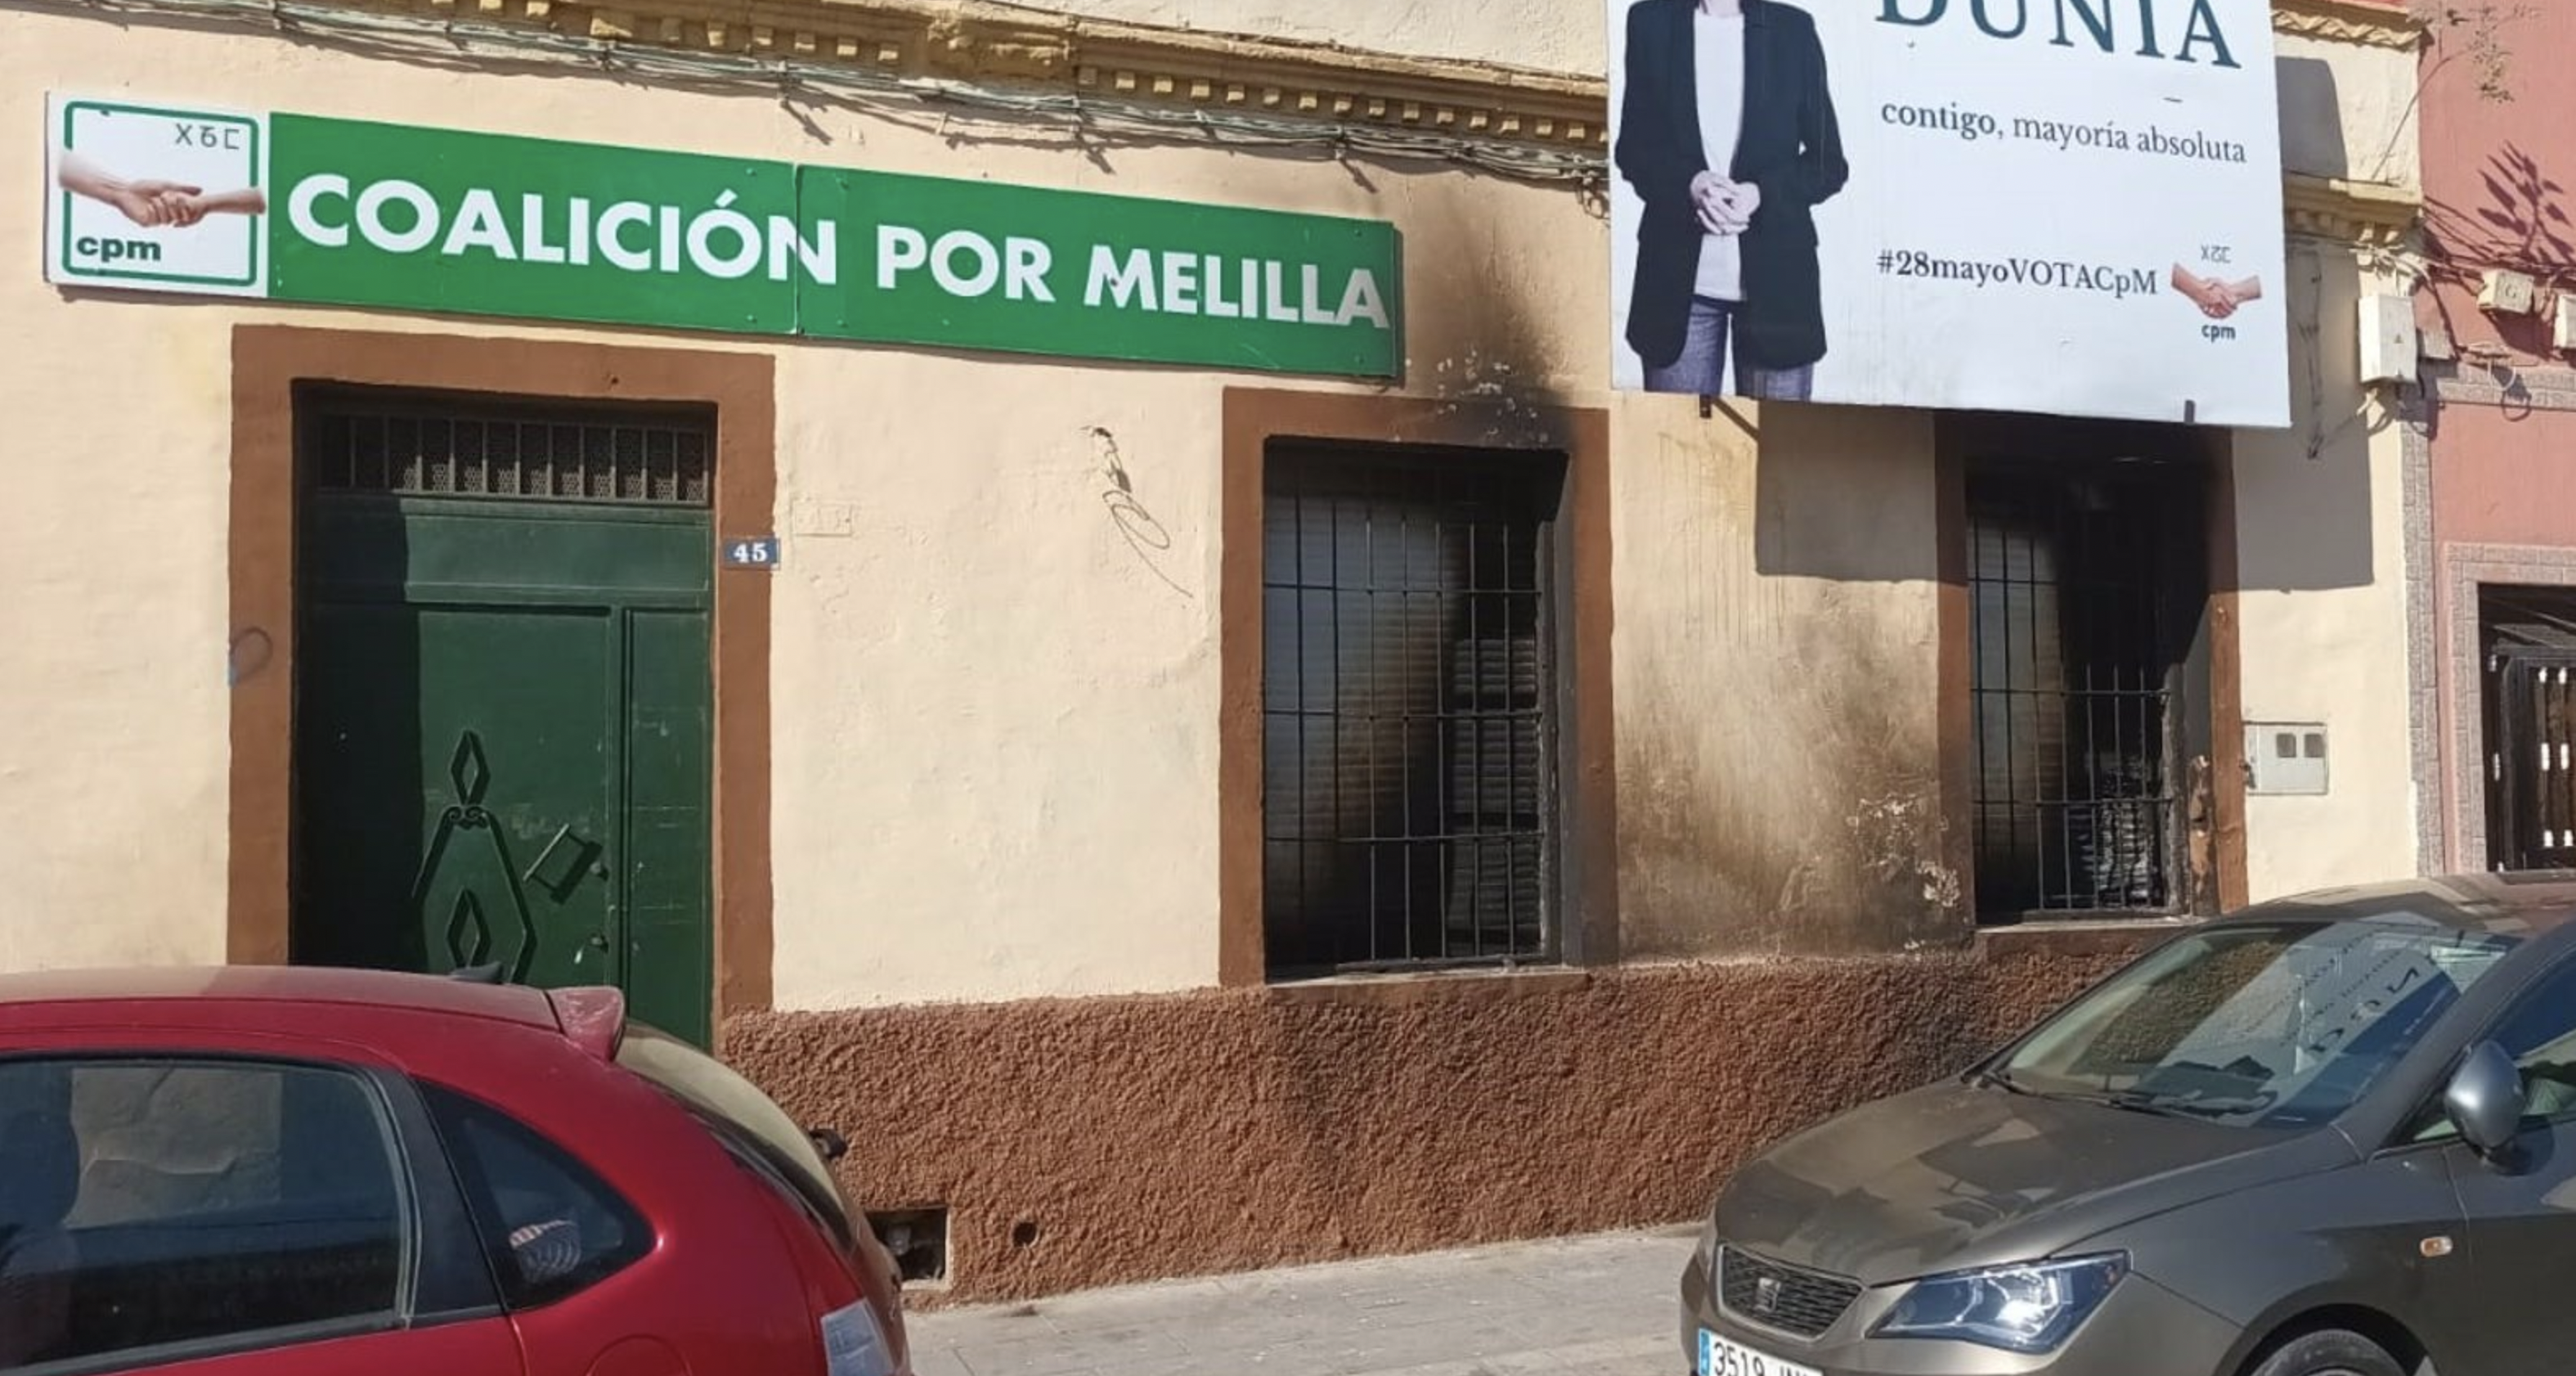 La sede de Coalición por Melilla (CPM) amanece quemada.